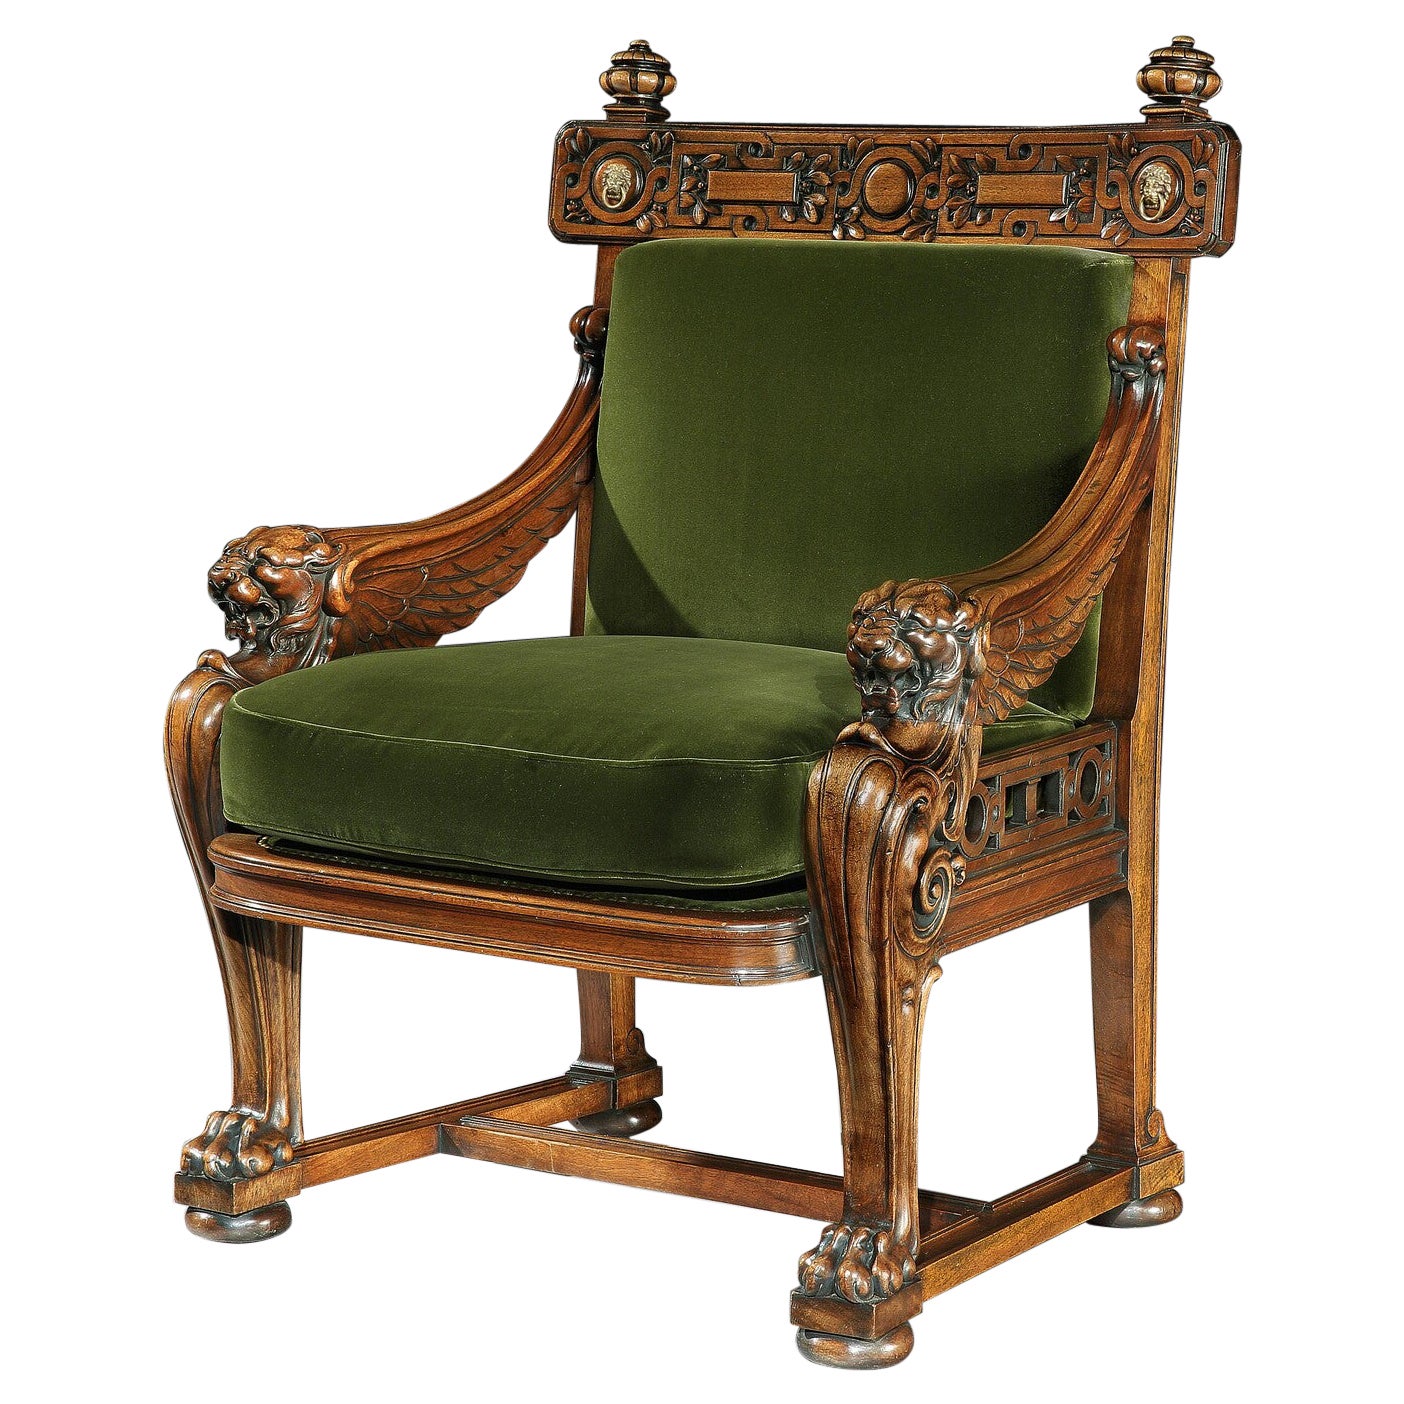 Seltener Löwen-Monogramm-Sessel aus dem 19. Jahrhundert nach Thomas Hope